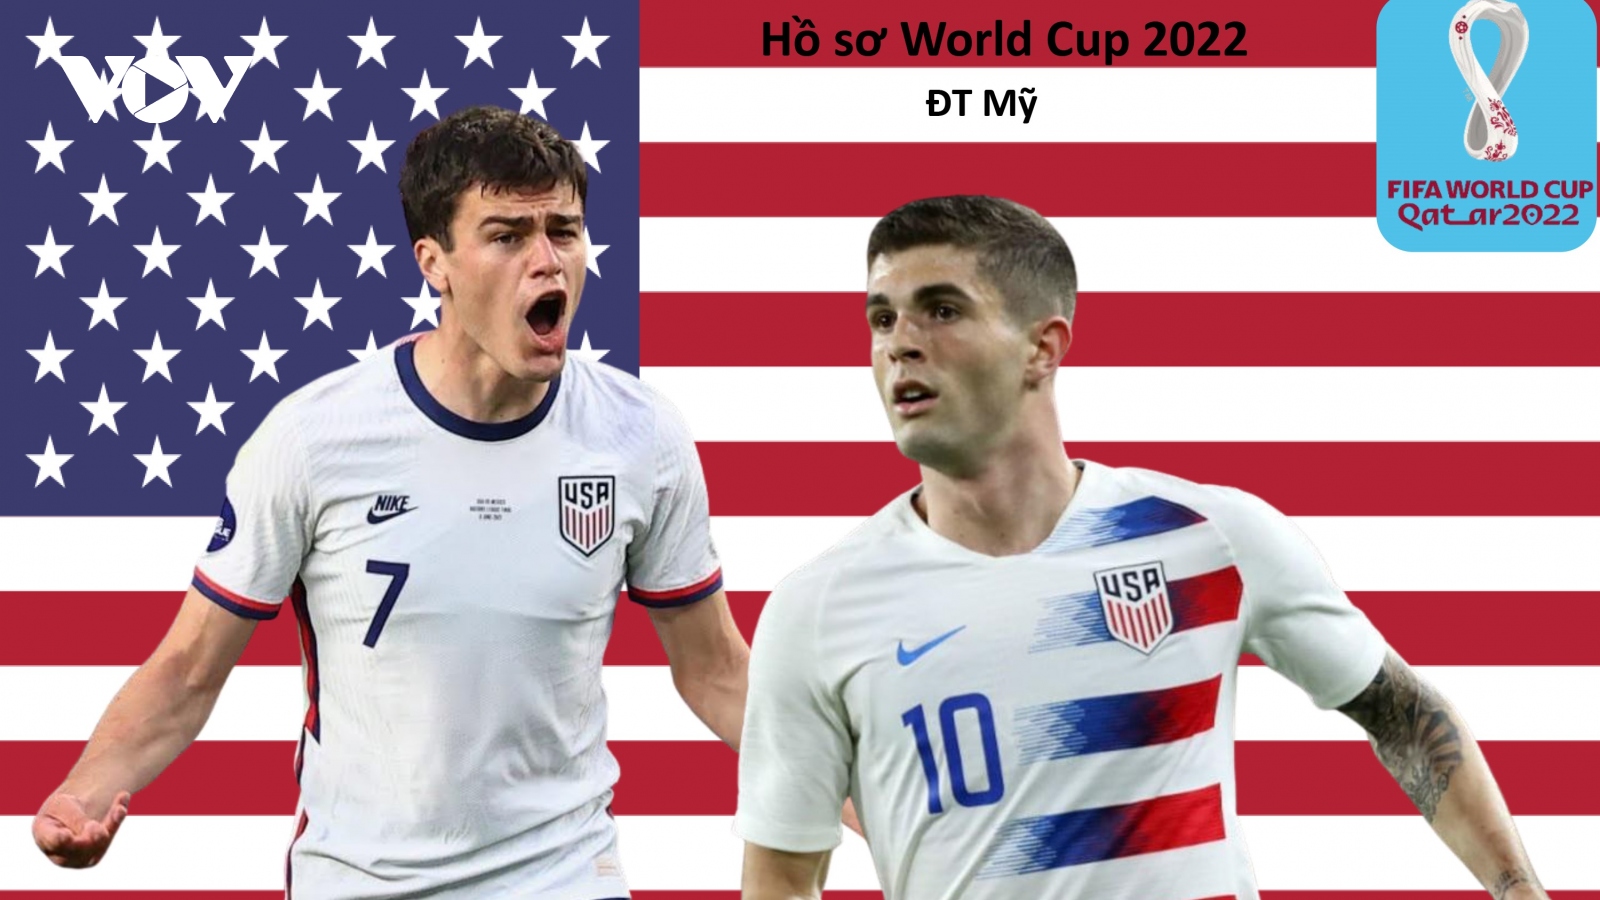 Hồ sơ các ĐT dự VCK World Cup 2022: Đội tuyển Mỹ